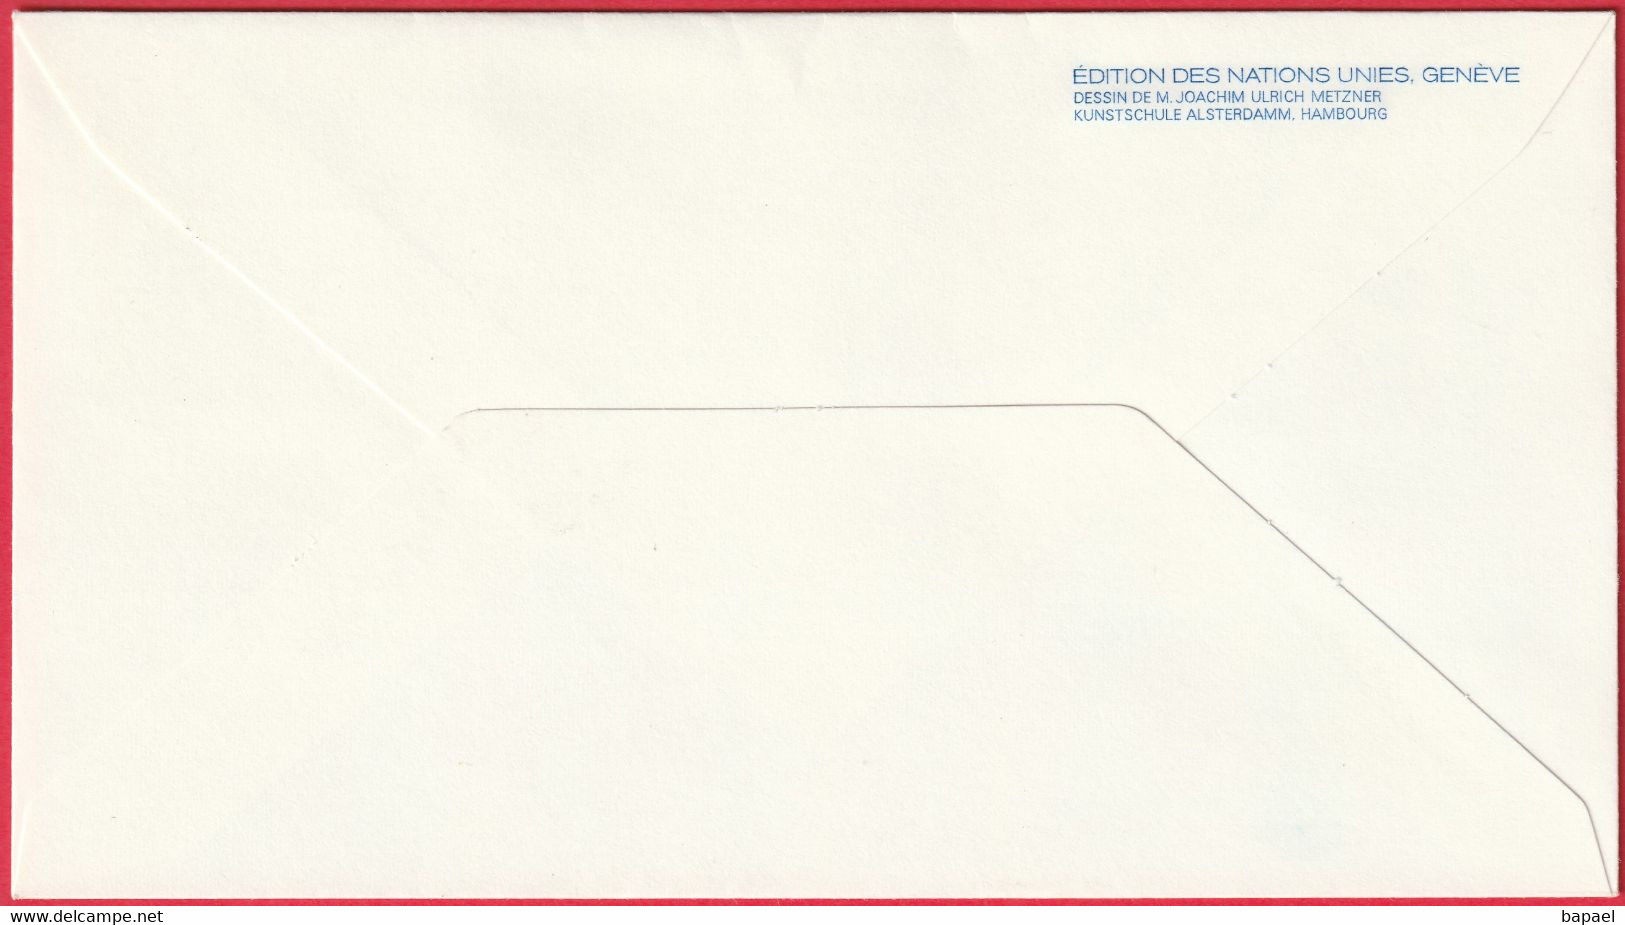 FDC - Enveloppe - Nations Unies - (New-York) (9-1-76) - Definitive Séries 1976 (Recto-Verso) - Brieven En Documenten